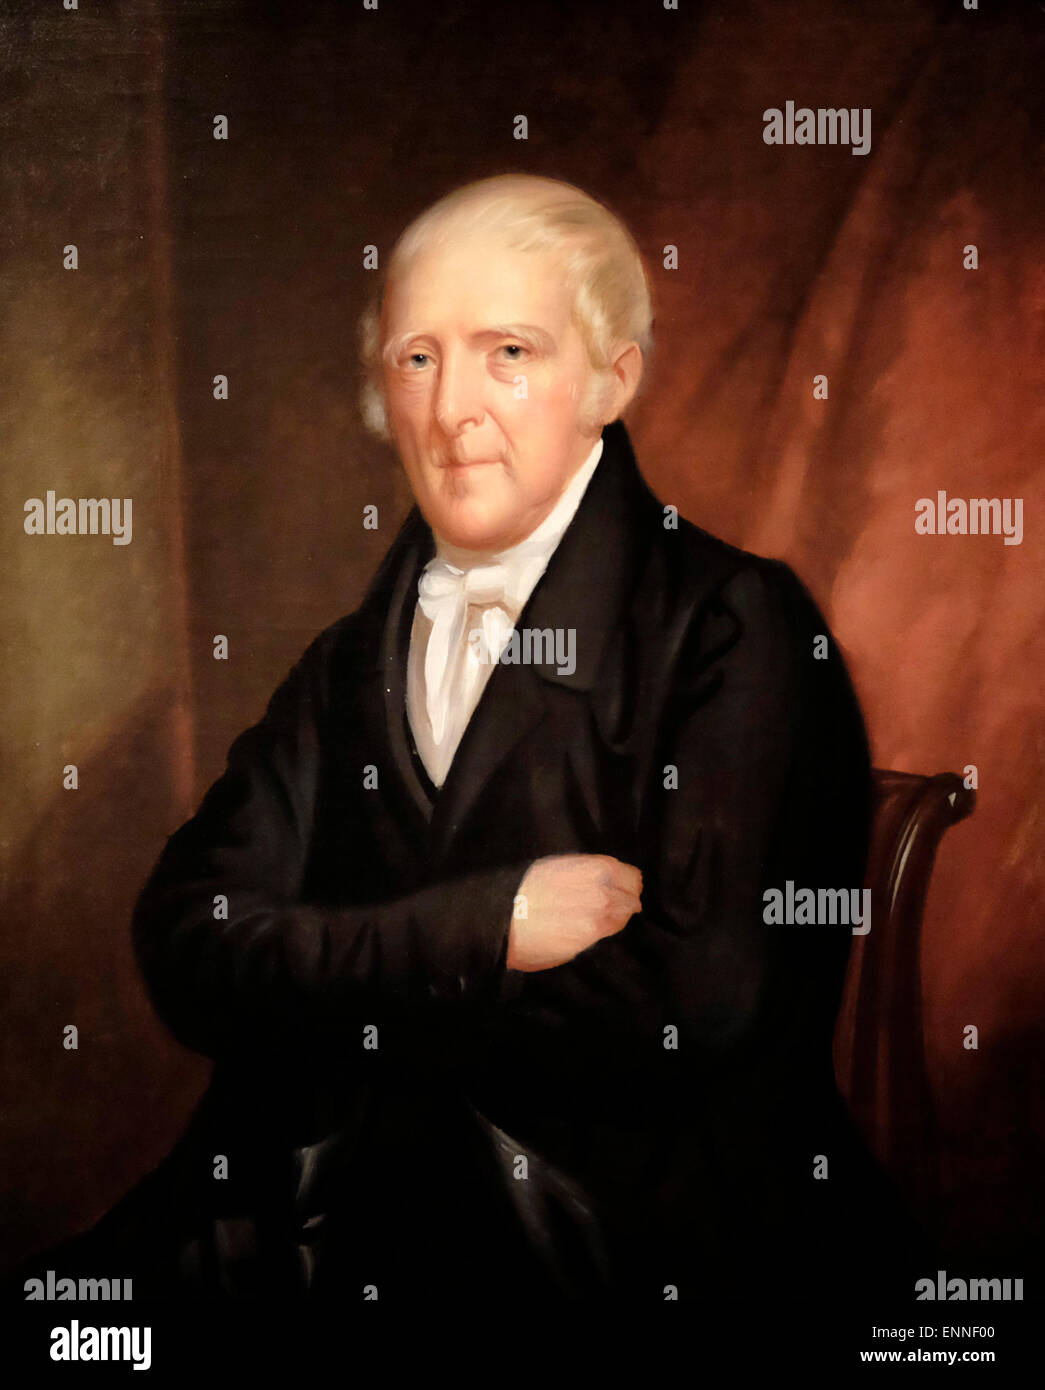 John Stevens um 1830.  John Stevens, US-amerikanischer Rechtsanwalt, Erfinder und Förderer der Entwicklung der Dampfkraft für den Transport. Seine Petition an den US-Kongress führte das Patentrecht von 1790, die Grundlage des heutigen US-Patentsystems. Stockfoto